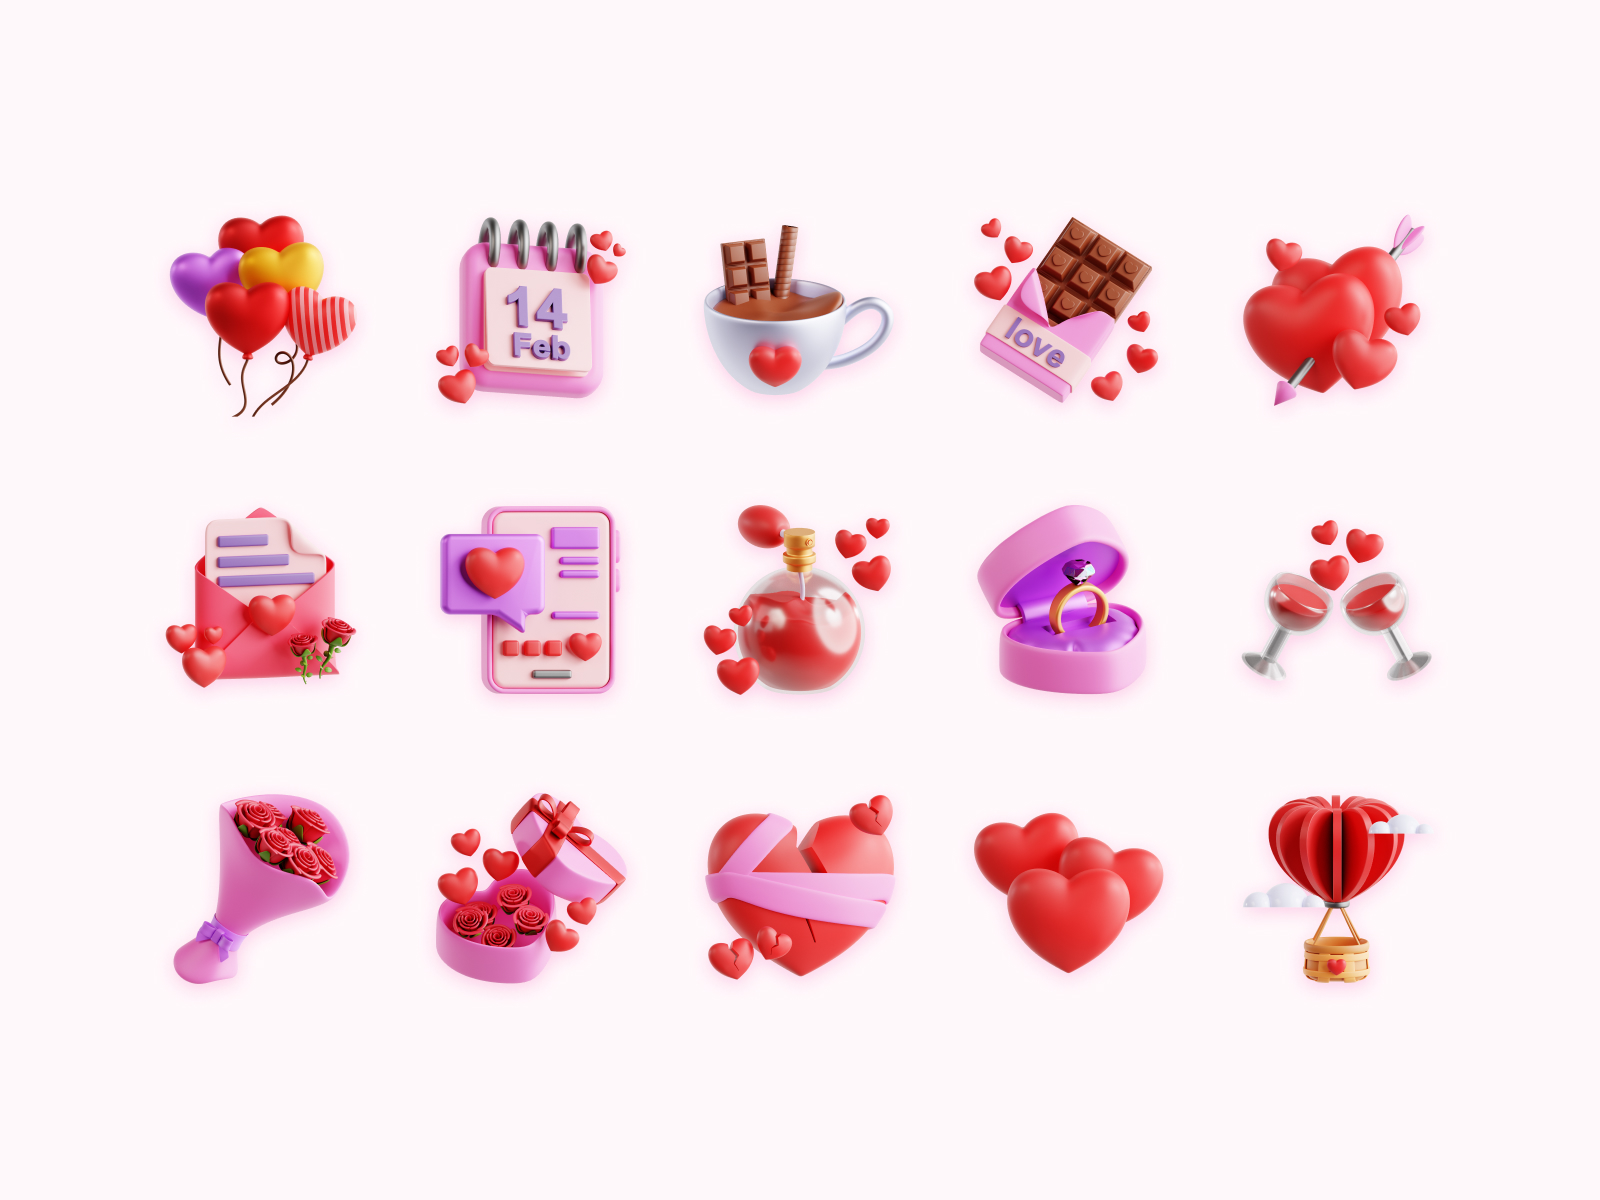 Free Valentine's Day 3D Icons by Zulfa Mahendra on Dribbble